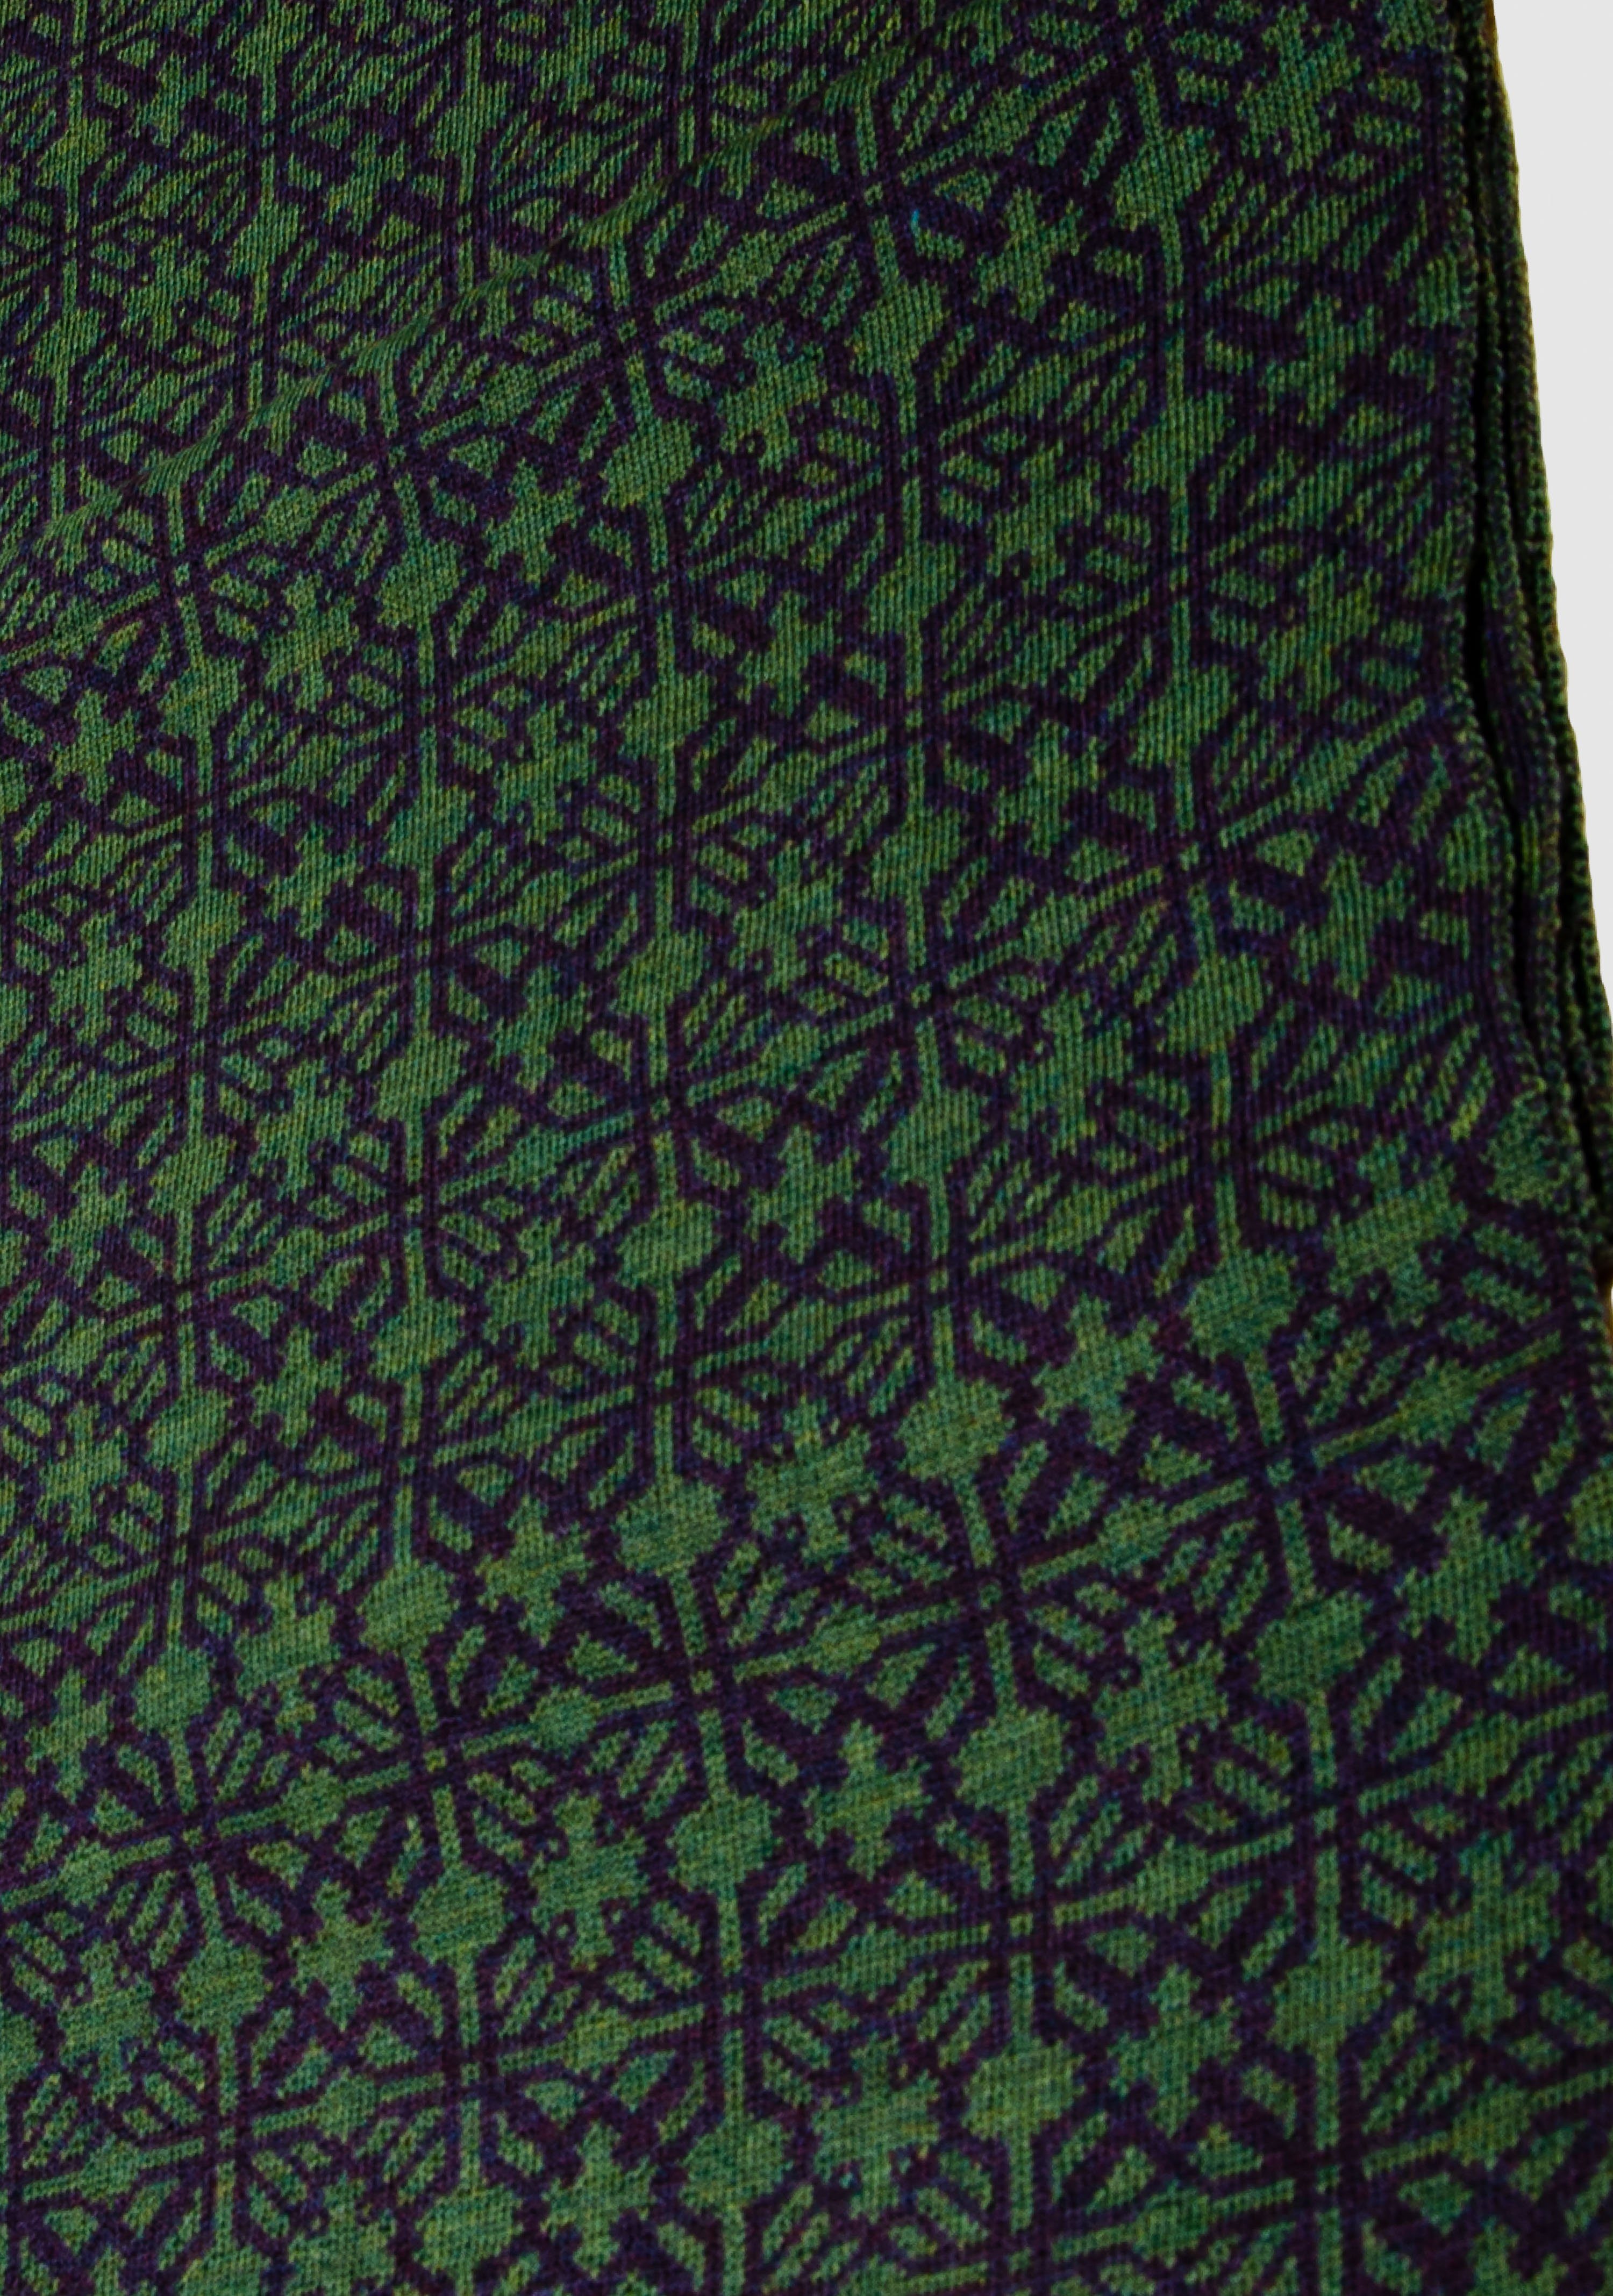 LANARTO slow fashion Wollschal Schal Irland in schönen Farben 100% Merino extrasoft purpur_schilf